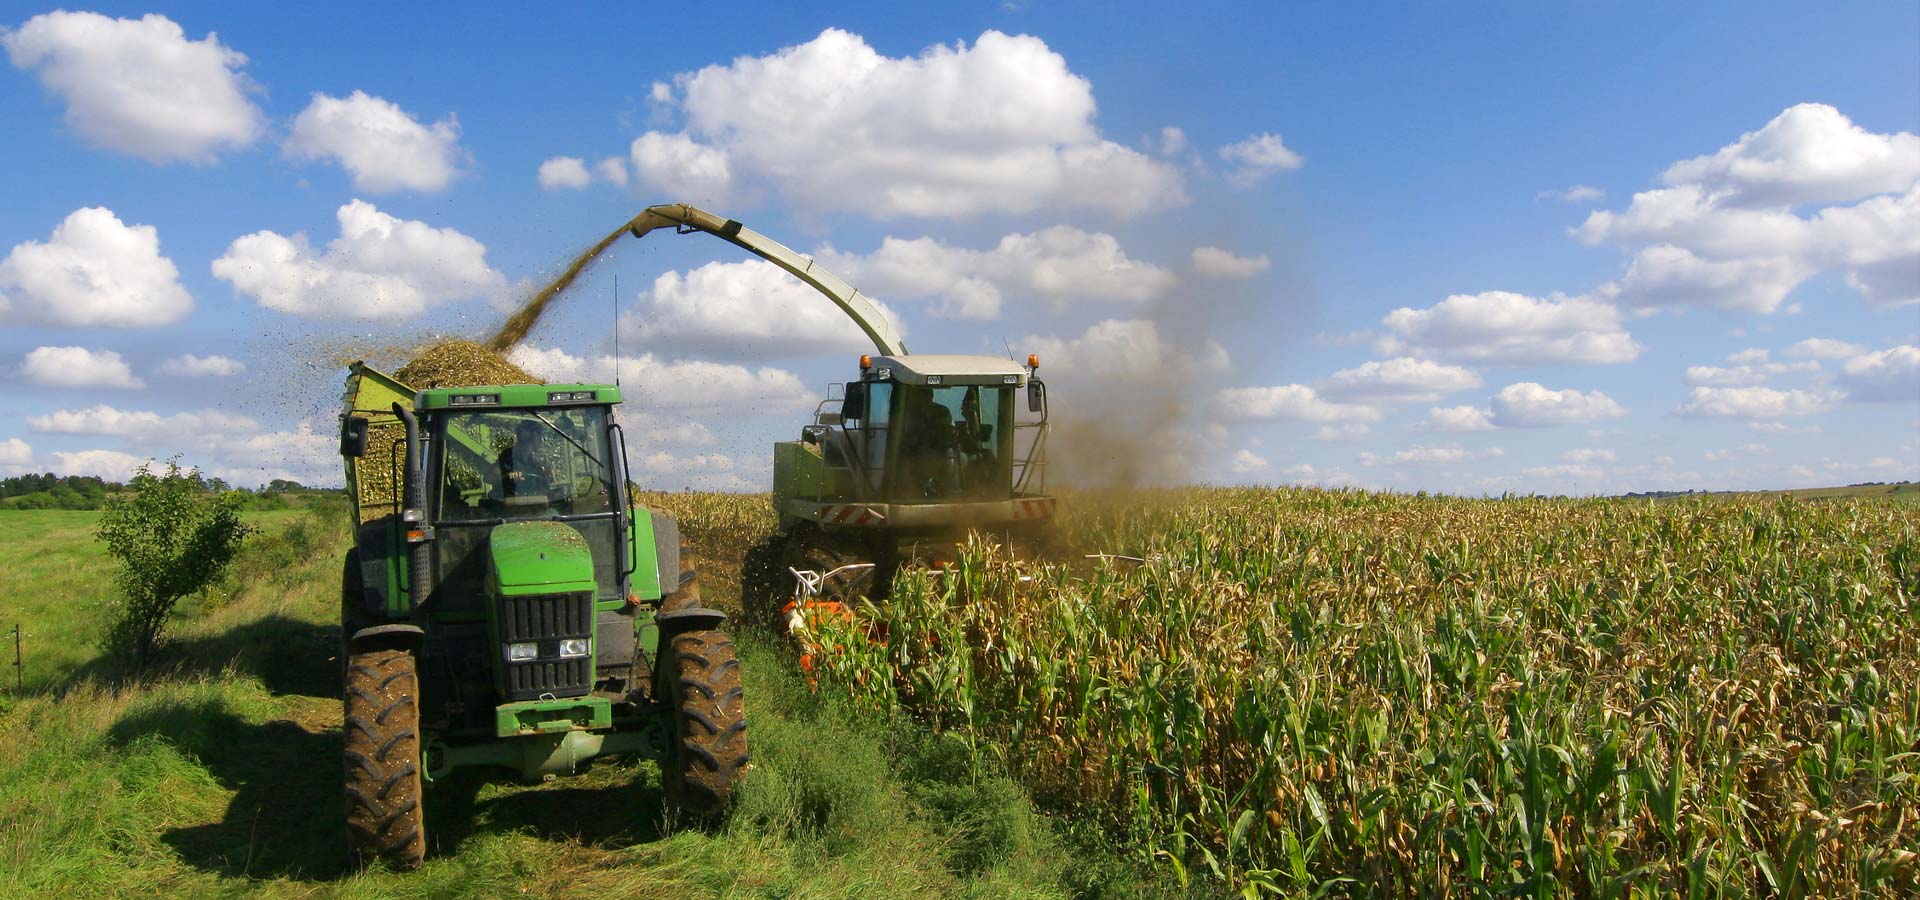 Tractors in a Corn Field